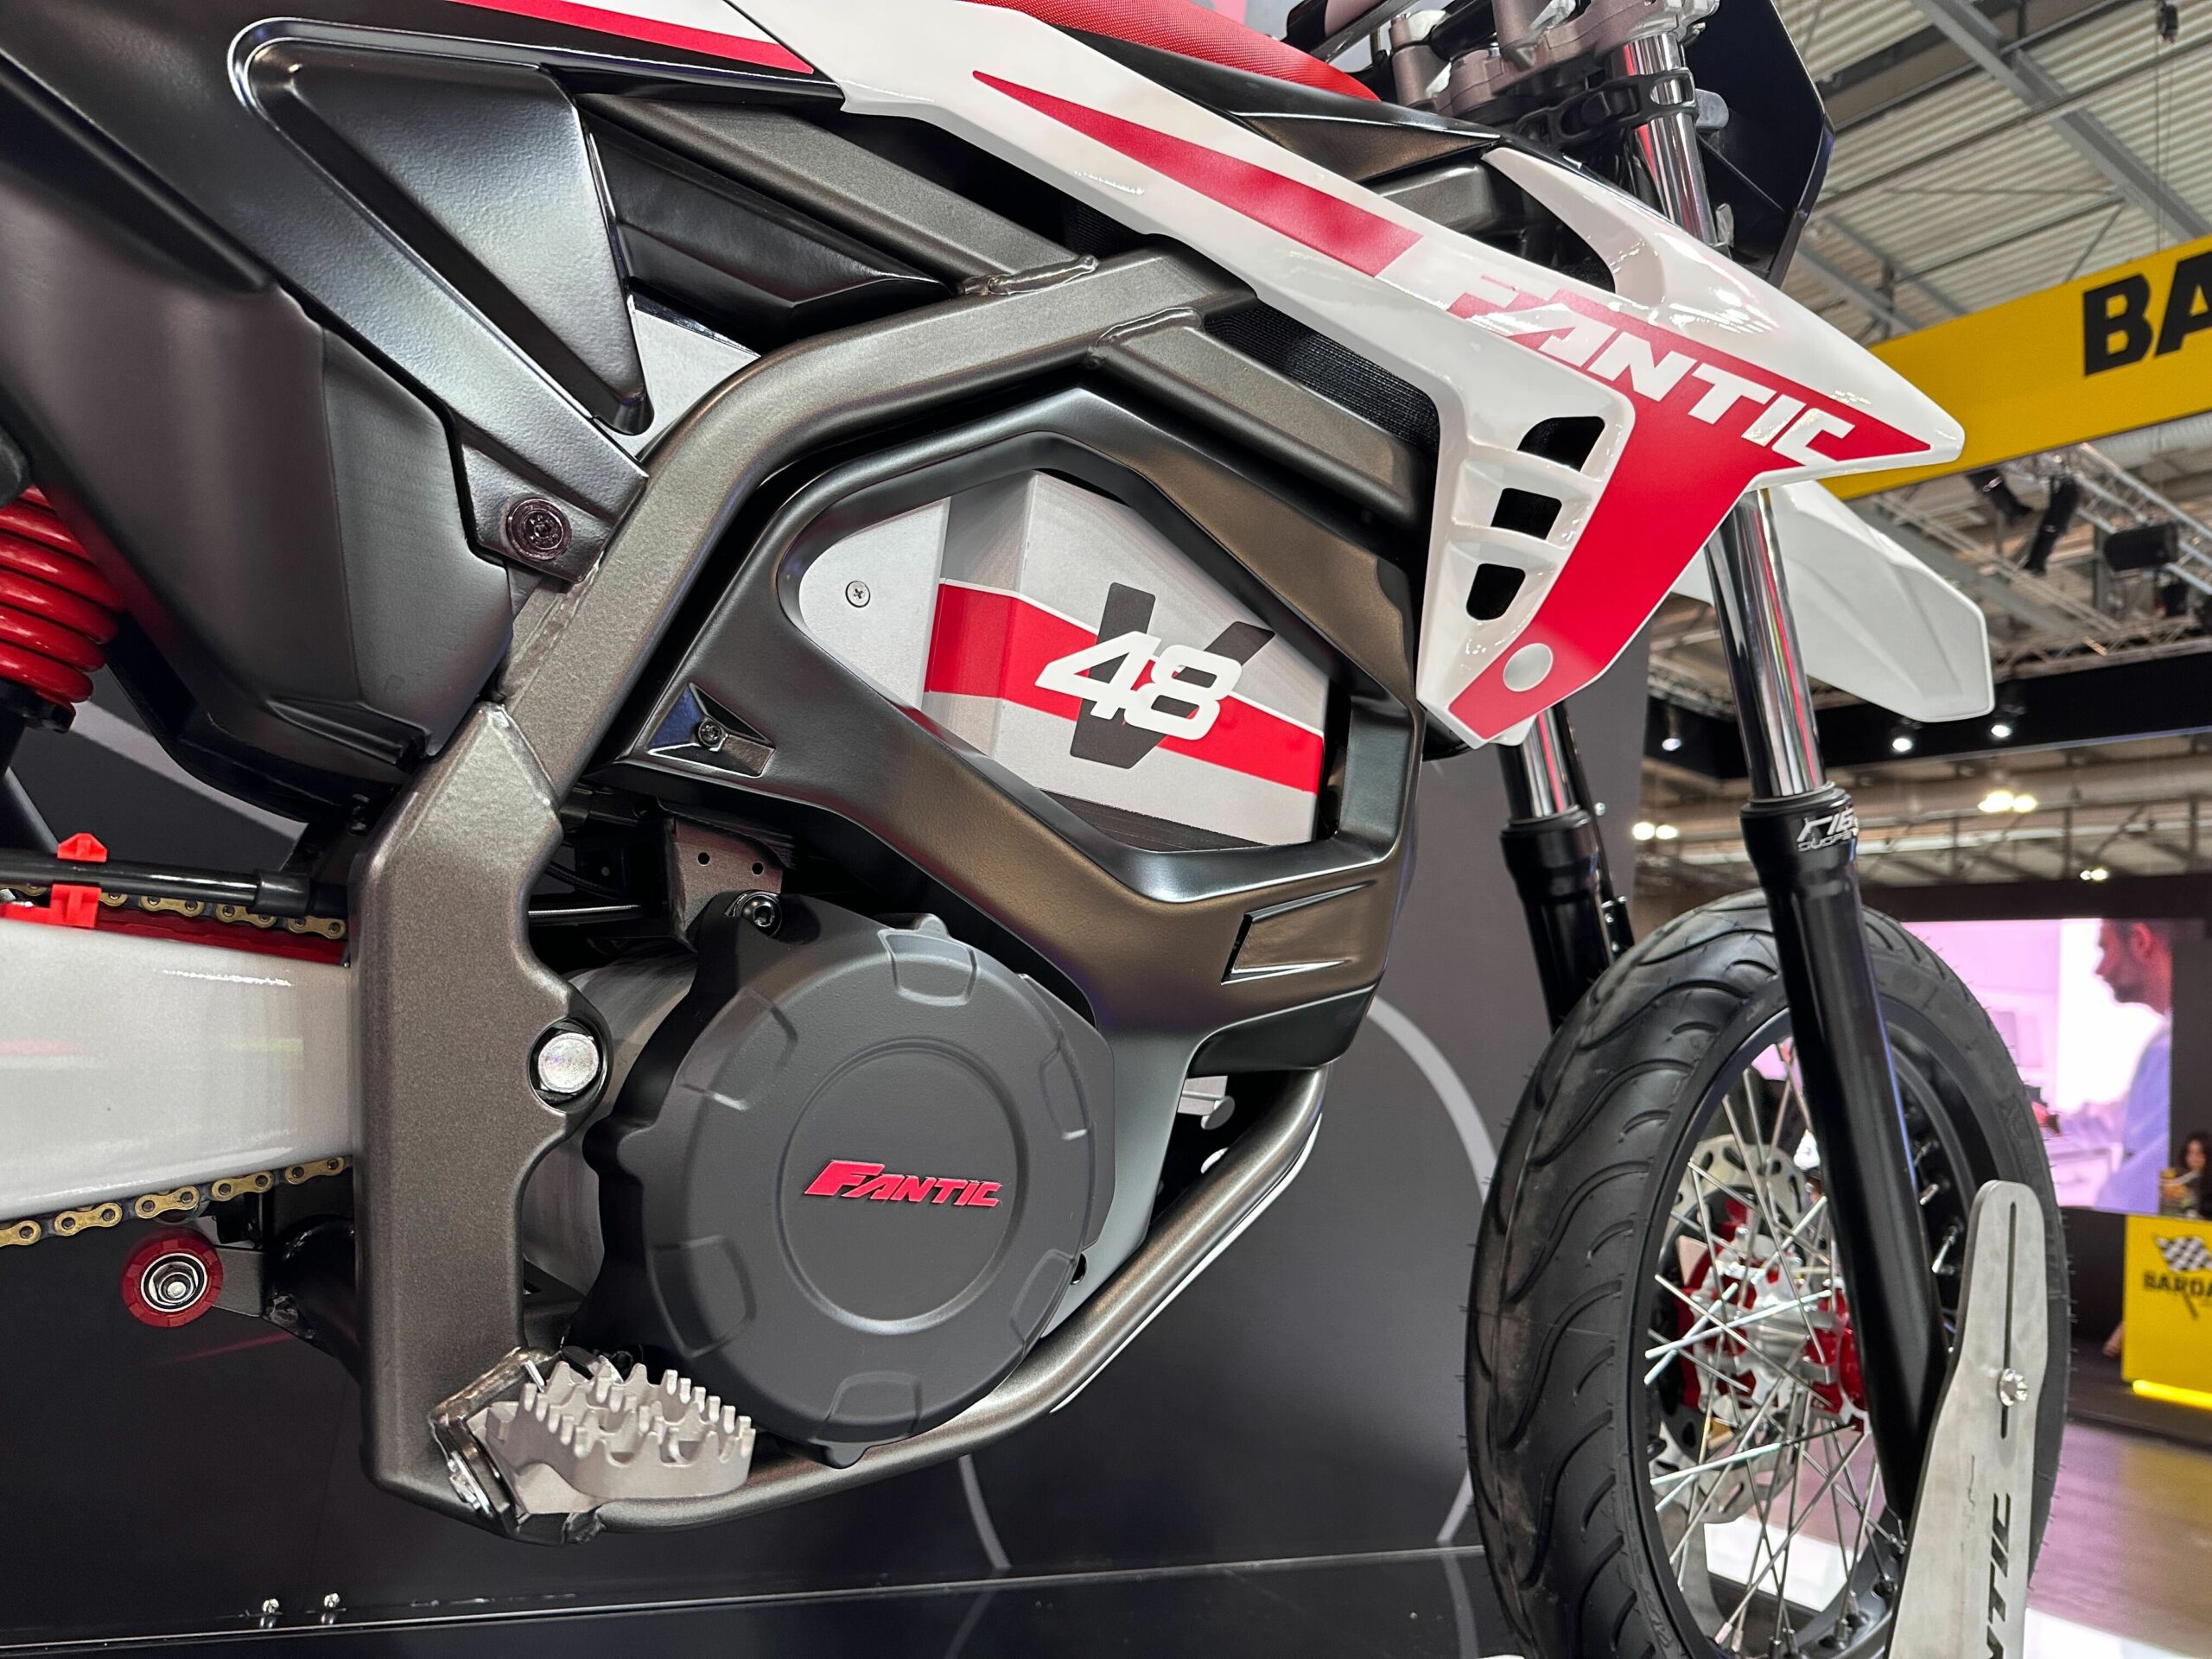 Universal-Motorrad-Scheinwerfer, S2, 12 V, 35 W, geeignet für Ka-wa-sa-ki  K.T.M Pit Bike Enduro und Supermoto Bike (weiß und schwarz) : :  Auto & Motorrad